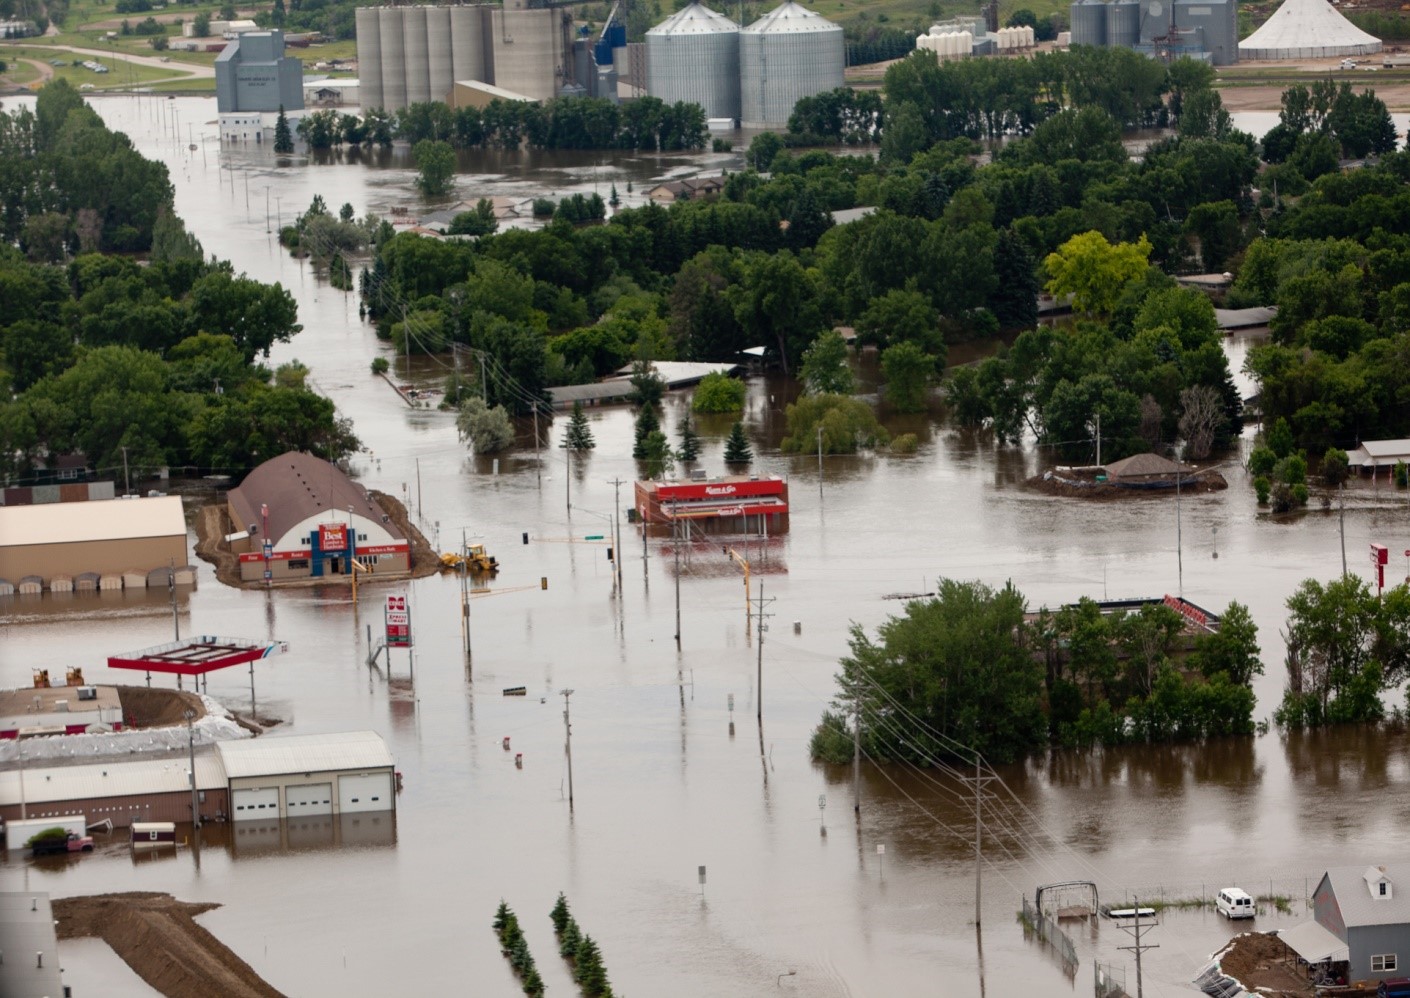    Les inondations de la rivière Souris en 2011, touchant des collectivités comme Burlington, dans le Dakota du Nord, ont mené à une nouvelle étude de la CMI sur les façons de limiter les dommages à l'avenir. Mention de source : FEMA